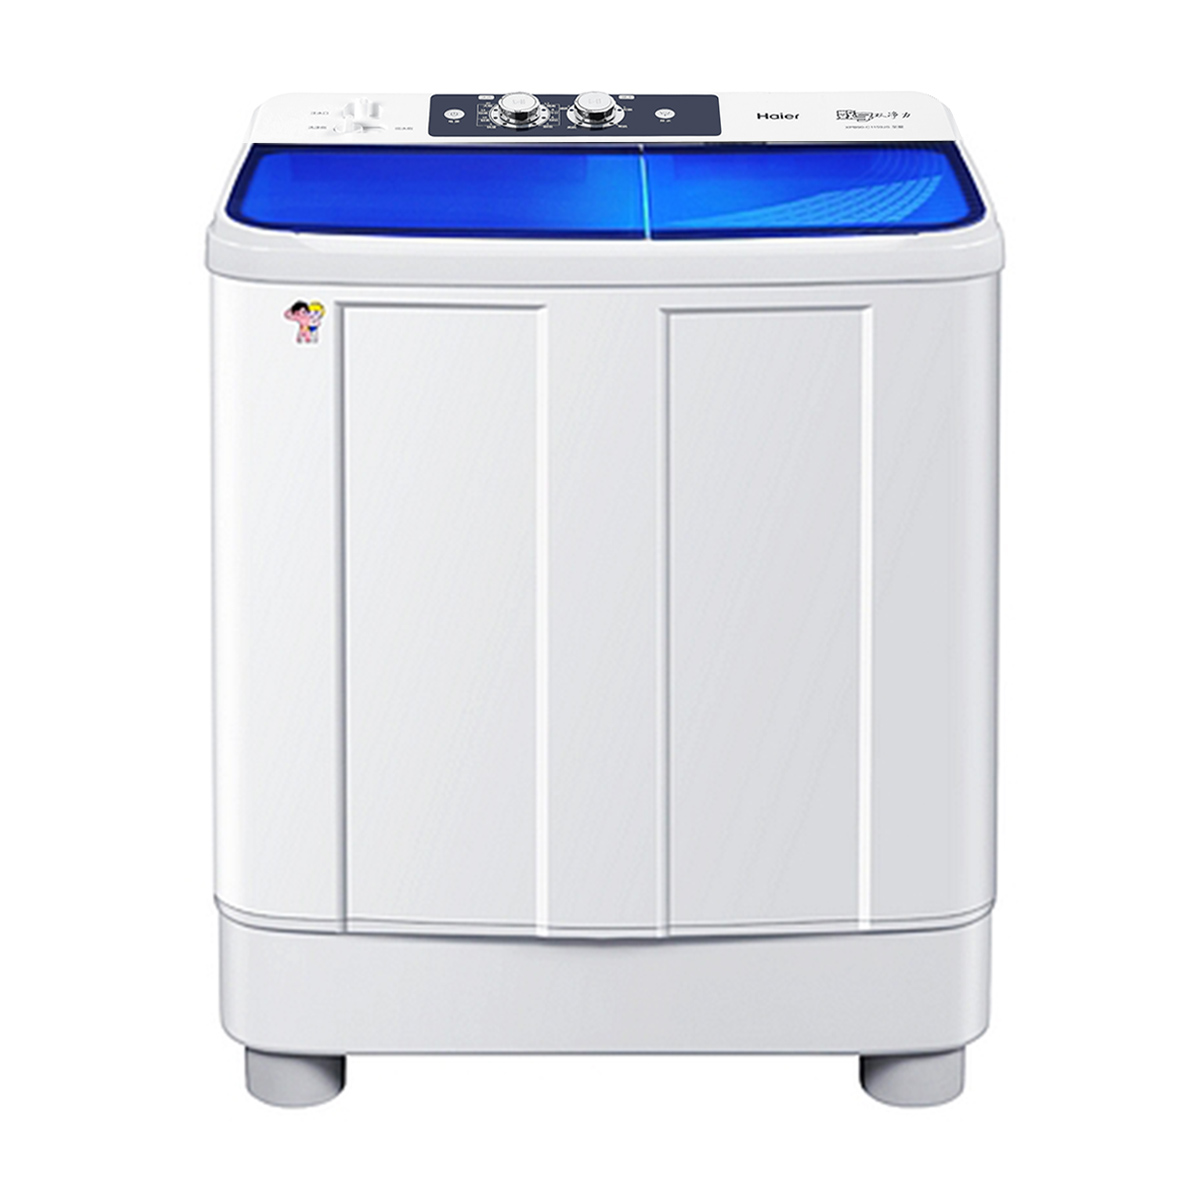 海尔Haier洗衣机 XPB90-C1159JS 说明书